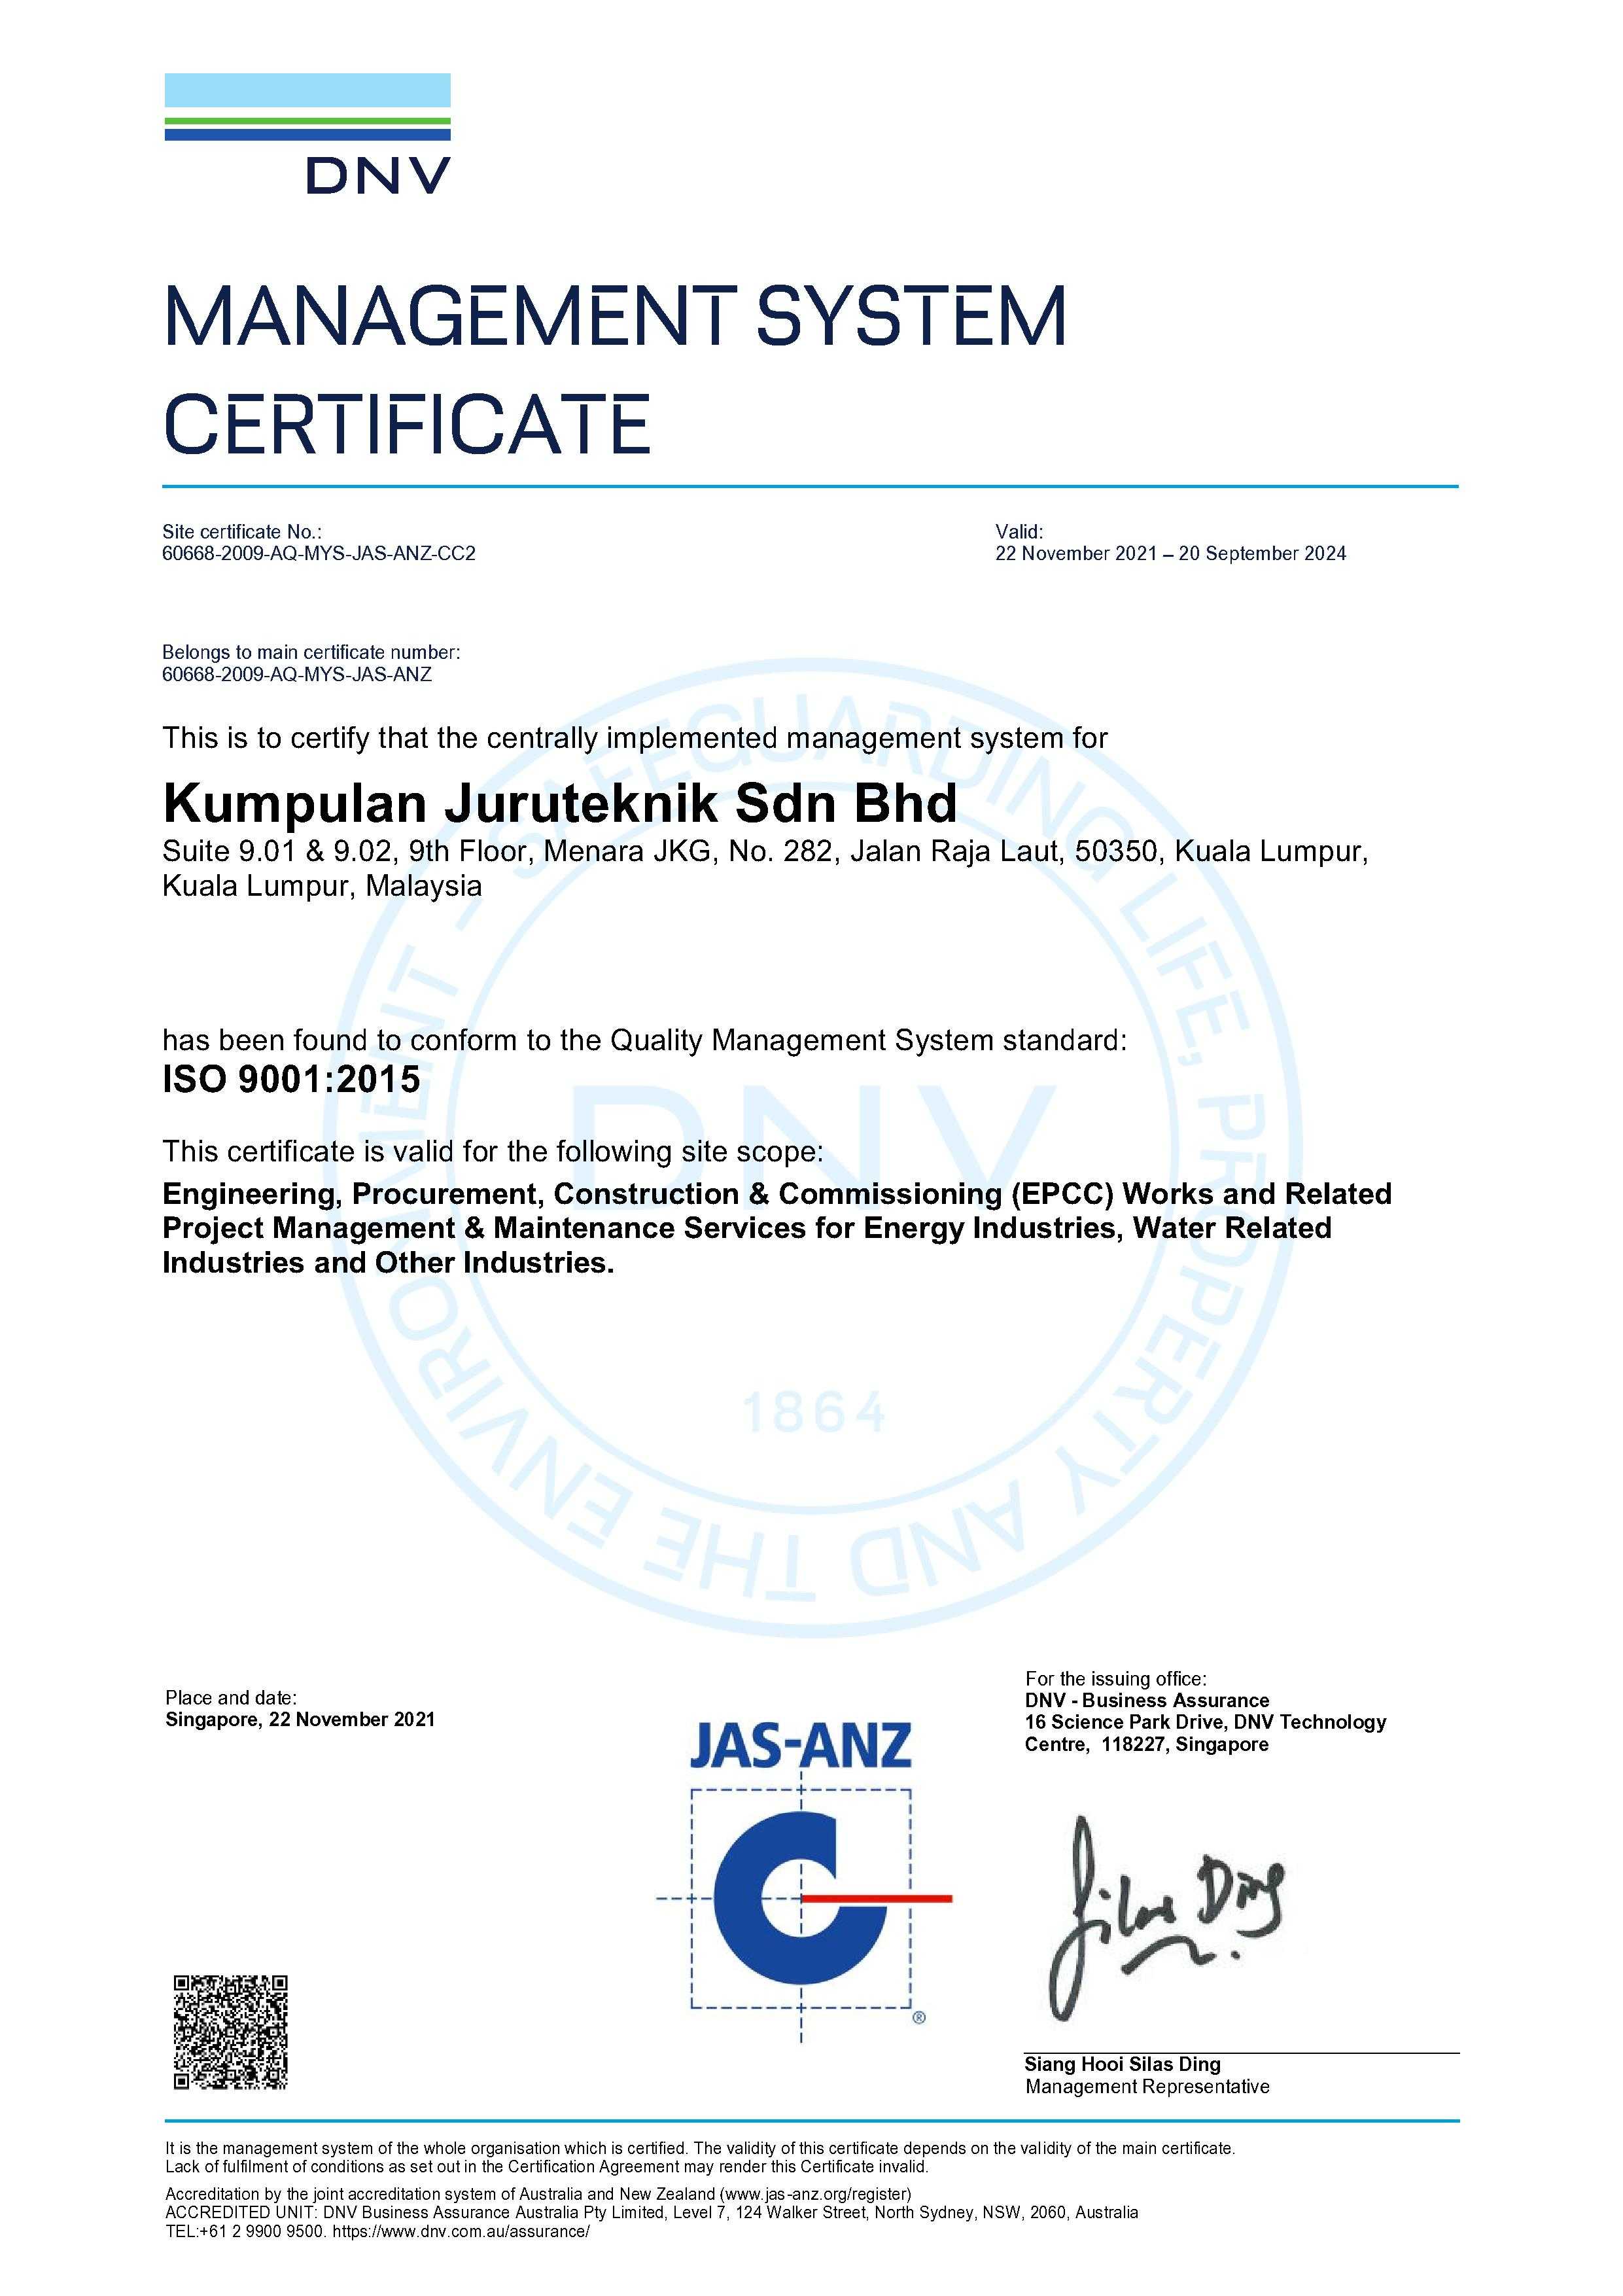 ISO 9001:2015 Kumpulan Juruteknik Sdn Bhd